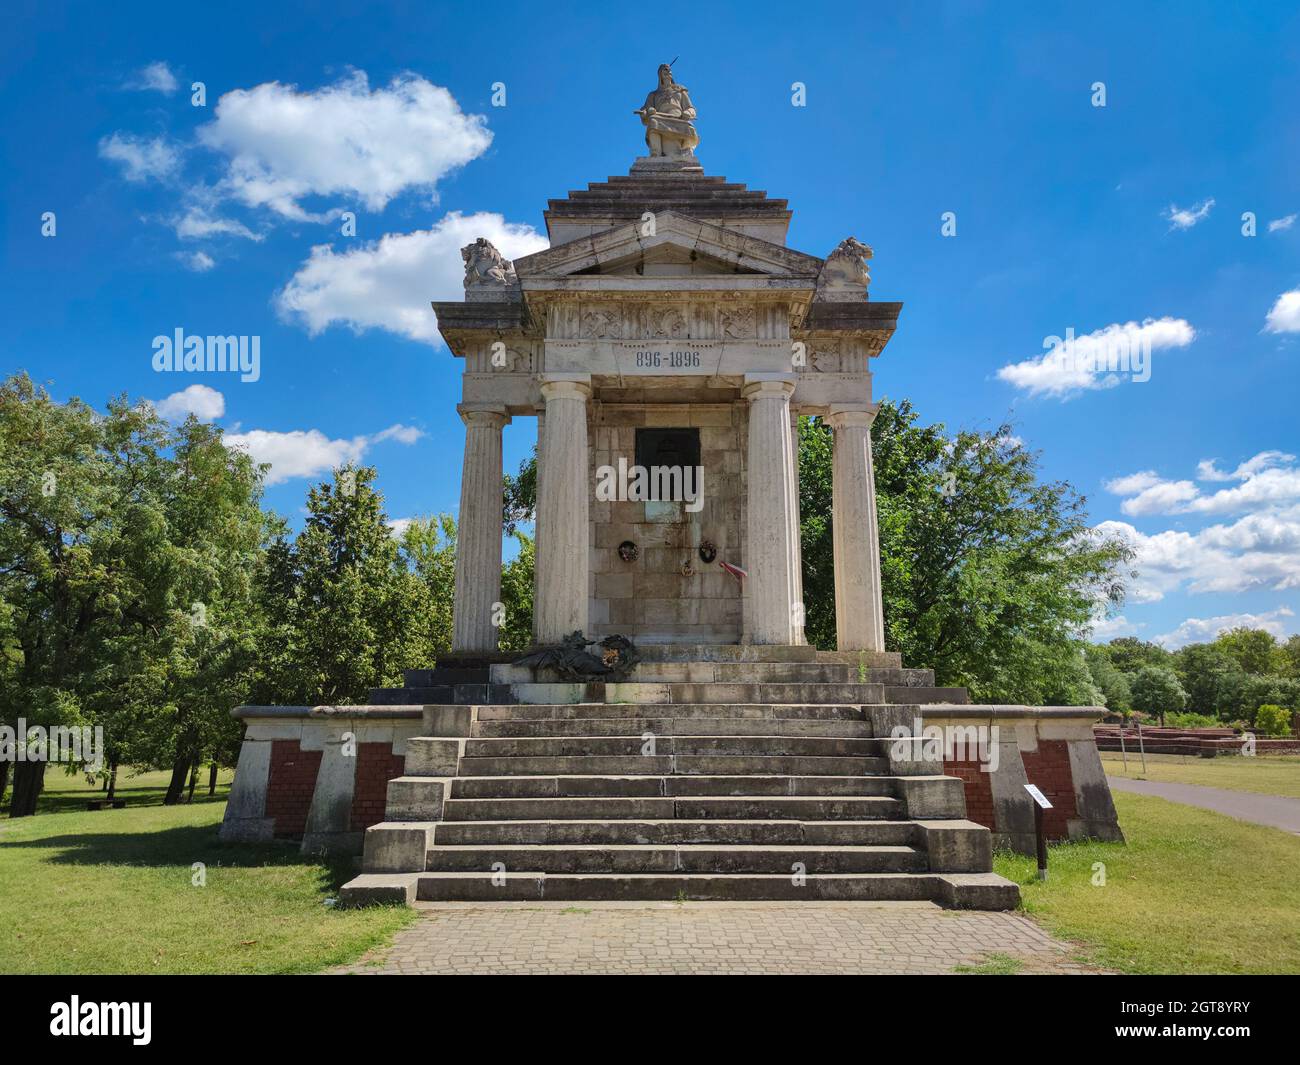 Monumento millenario del re Árpád nel Parco Nazionale del Patrimonio dell'Umanità di Opusztaszer, Ungheria. Foto Stock